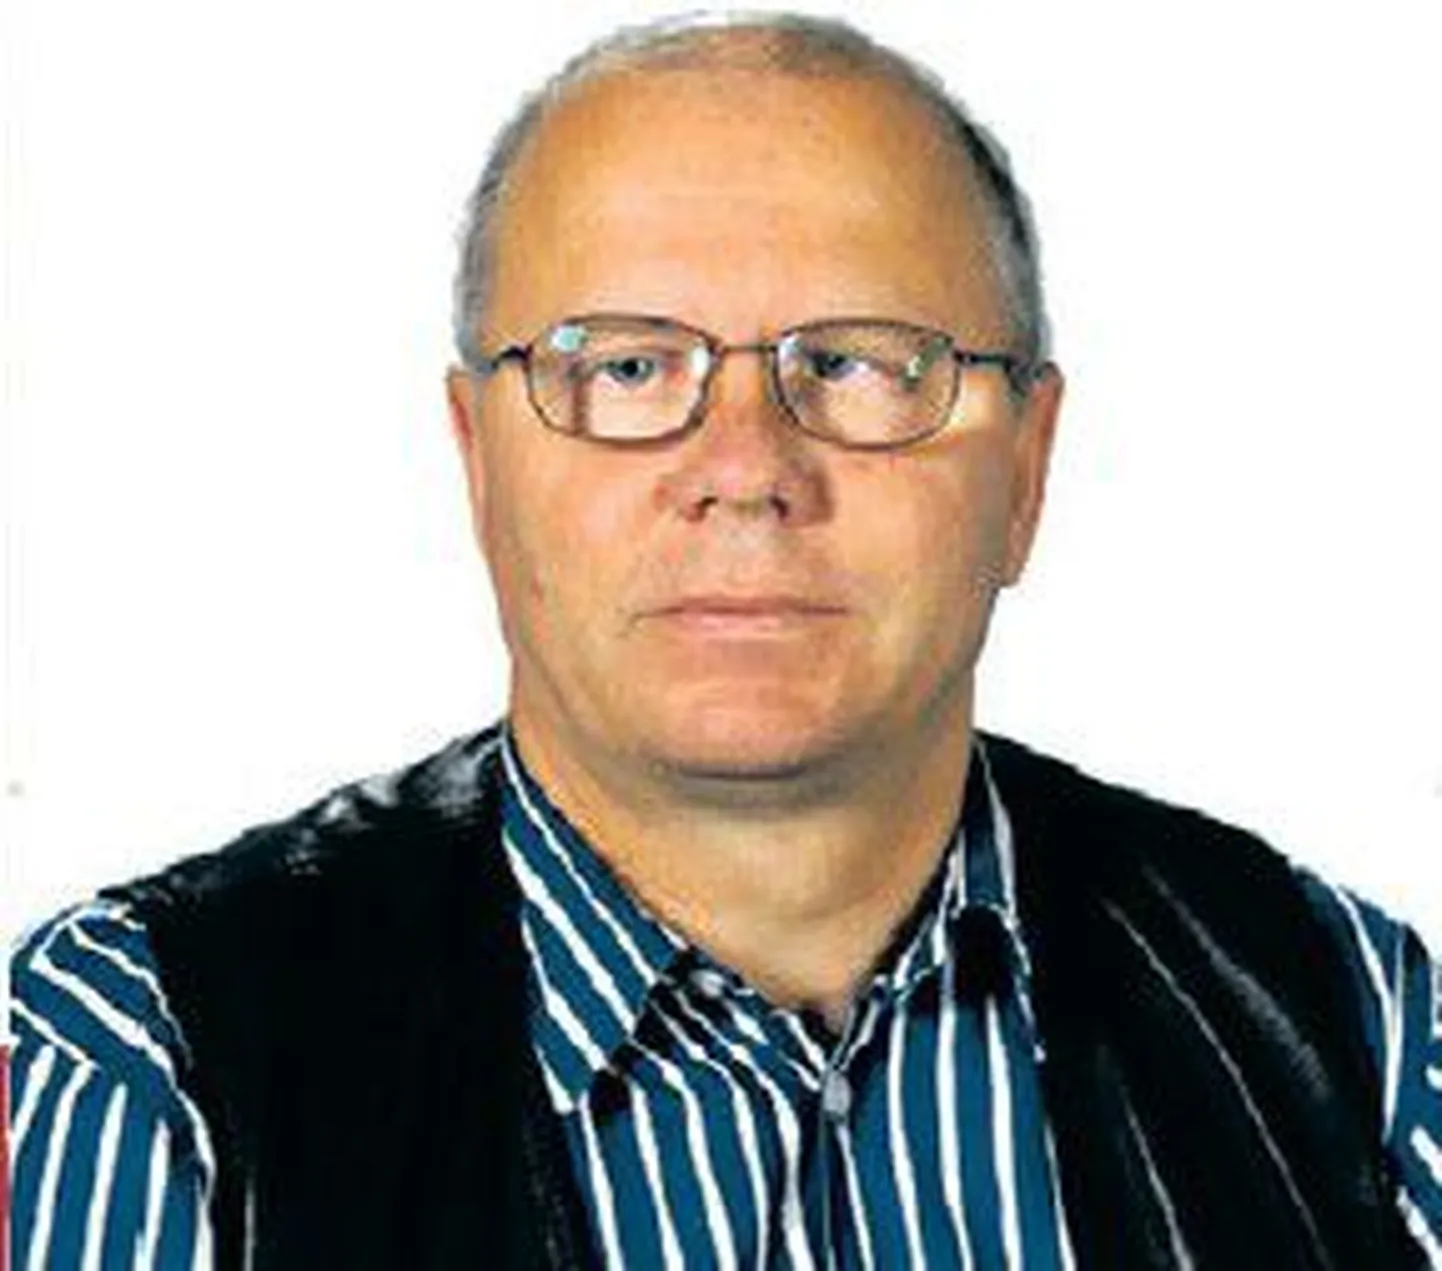 Arno Arukask
Eesti Ametiühingute Keskliidu Tartu osakonna juhataja